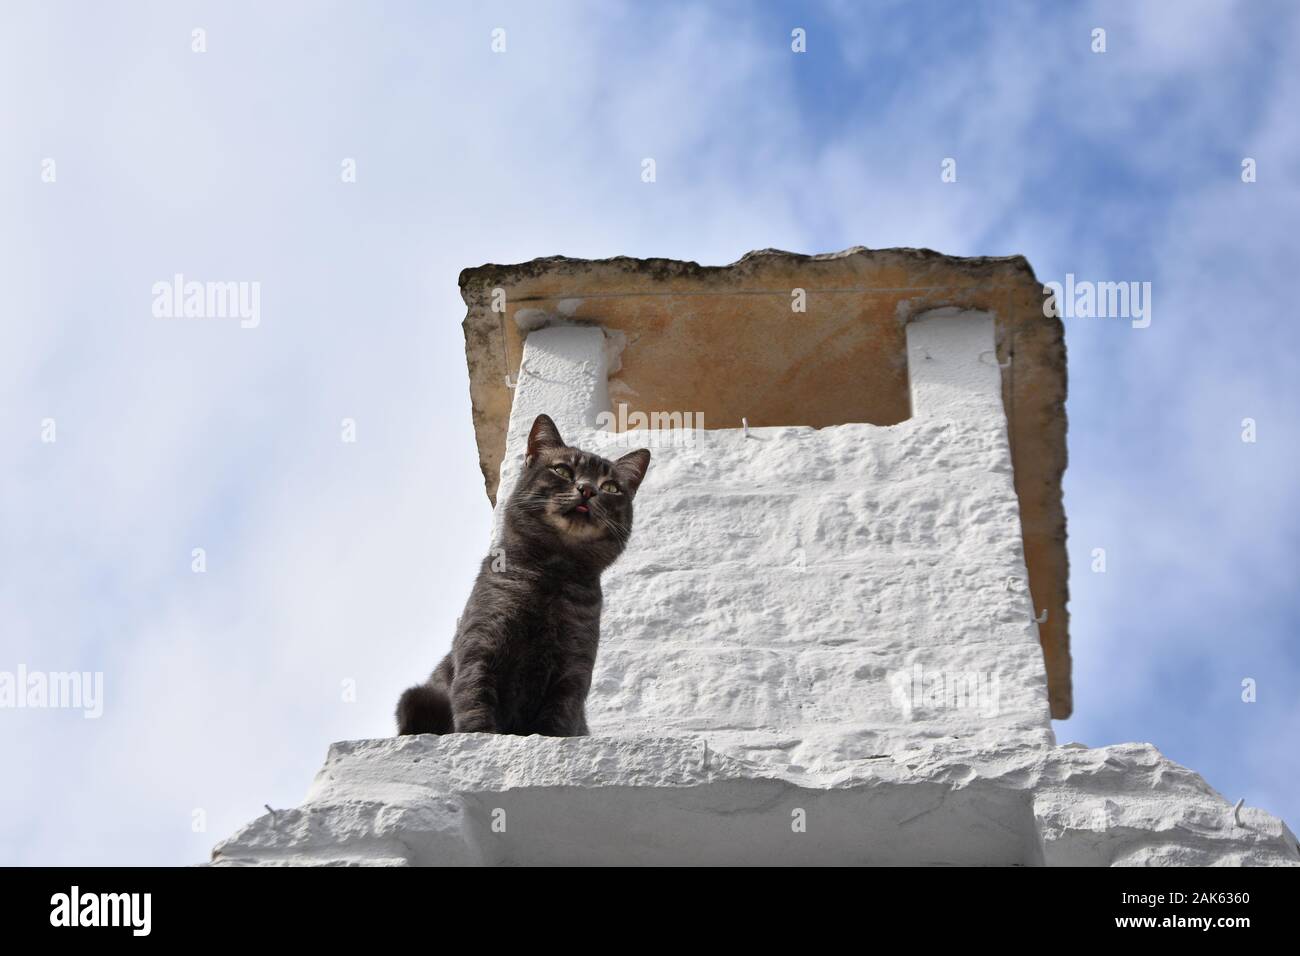 Gato oscuro por chimenea blanca - techo de piedra de un trulli - un símbolo de la ciudad de Alberobello, Italia Foto de stock